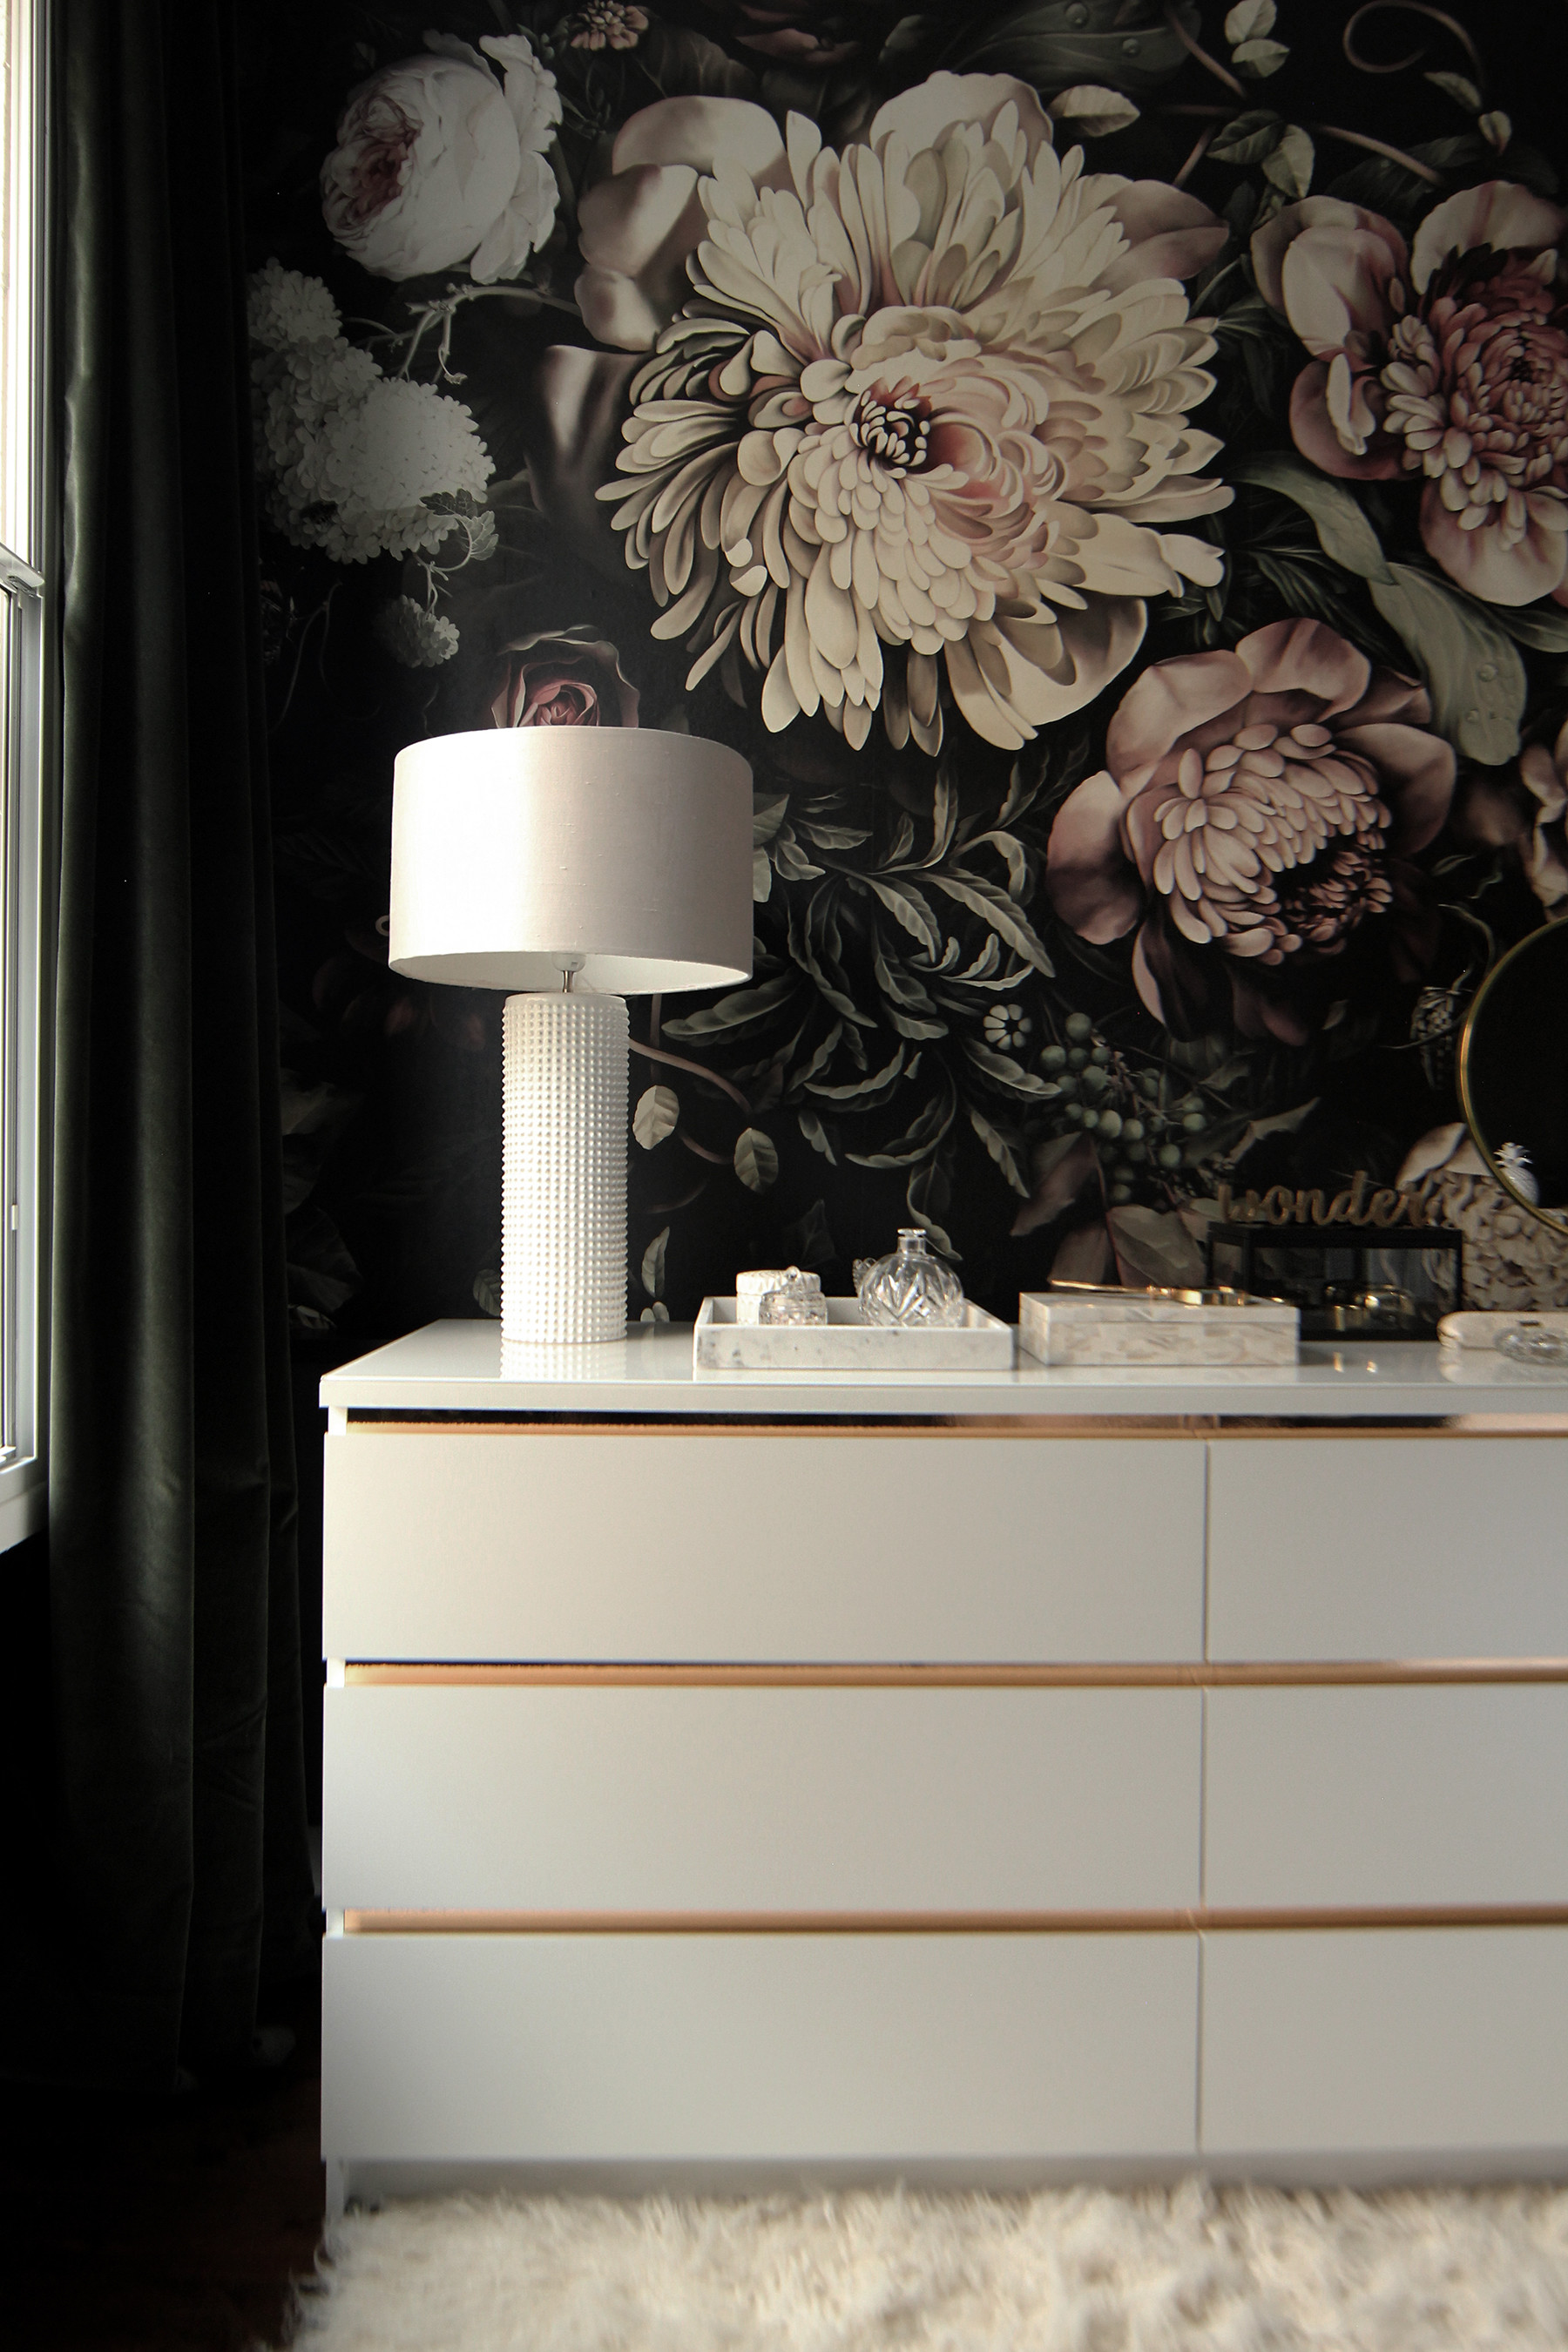 Preciously Me blog One Room Challenge – Bedroom makeover reveal. Ellie Cashman Dark Floral